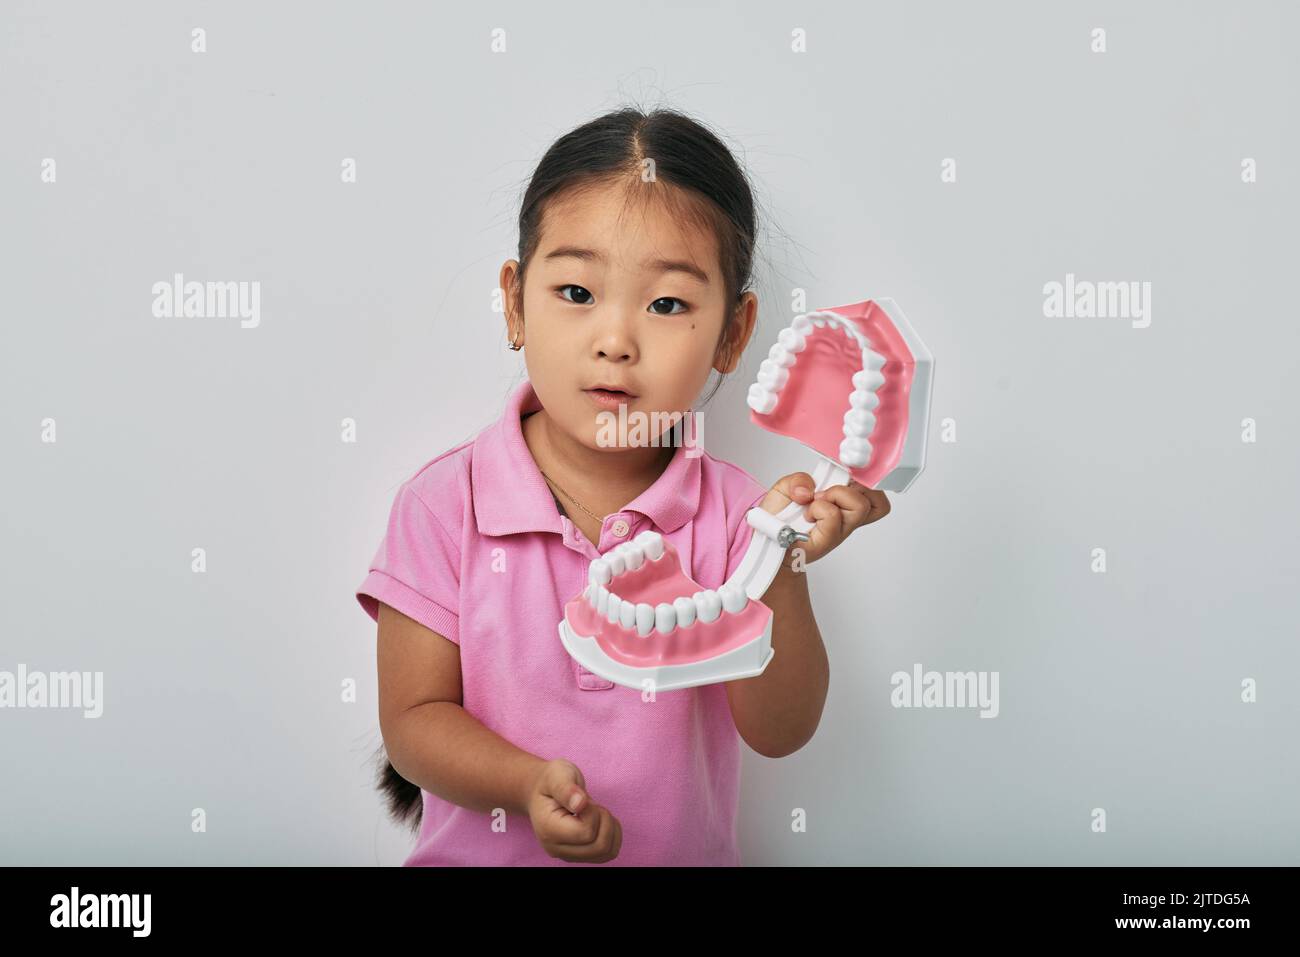 Concetto di salute dentale e cura dei denti per bambini. Cute ragazza coreana bambino che mostra modello anatomico di denti su sfondo grigio Foto Stock